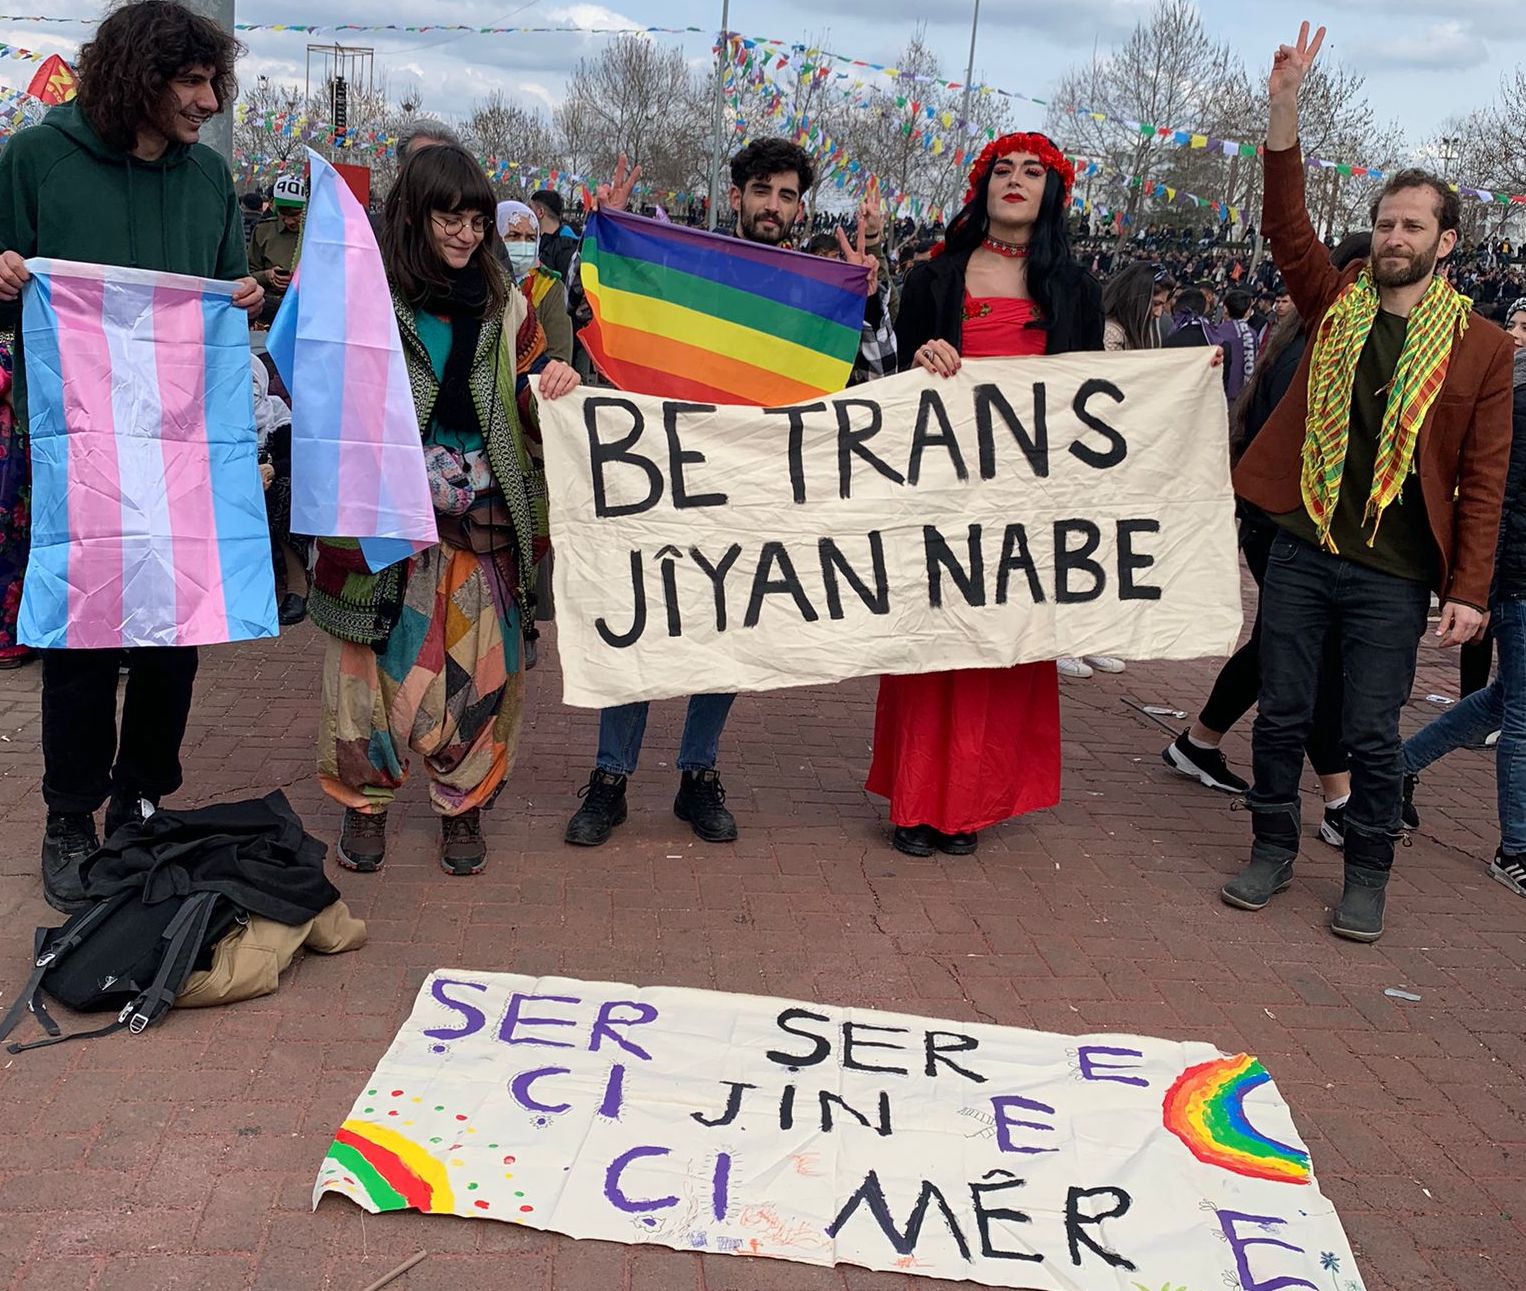 “Newroz’da LGBTİ+'lara karşı işlenen nefret saldırılarını kabul etmiyoruz!” Kaos GL - LGBTİ+ Haber Portalı